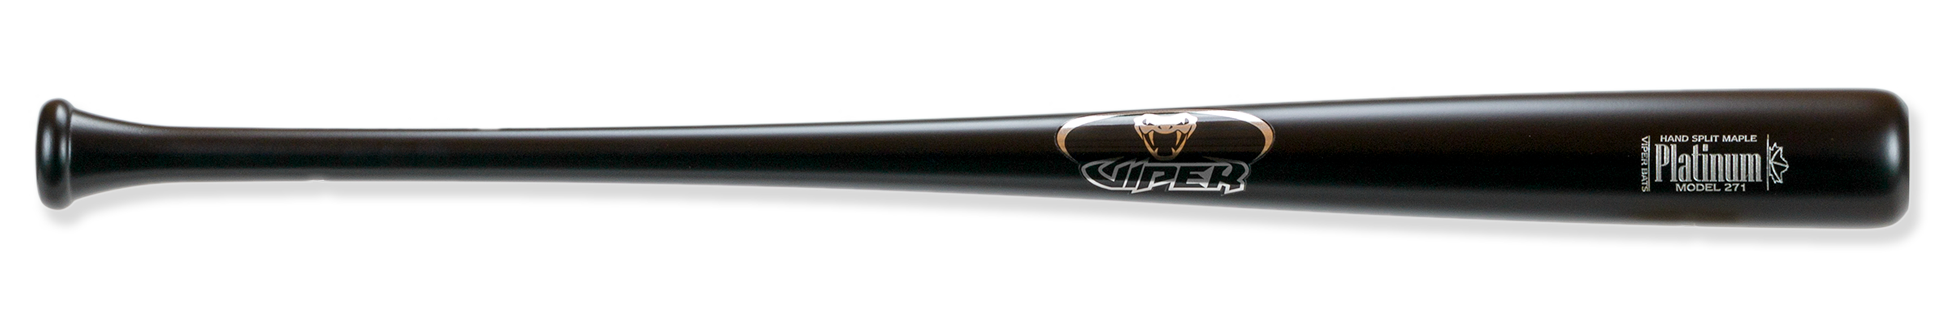 platinum 271 wood bat